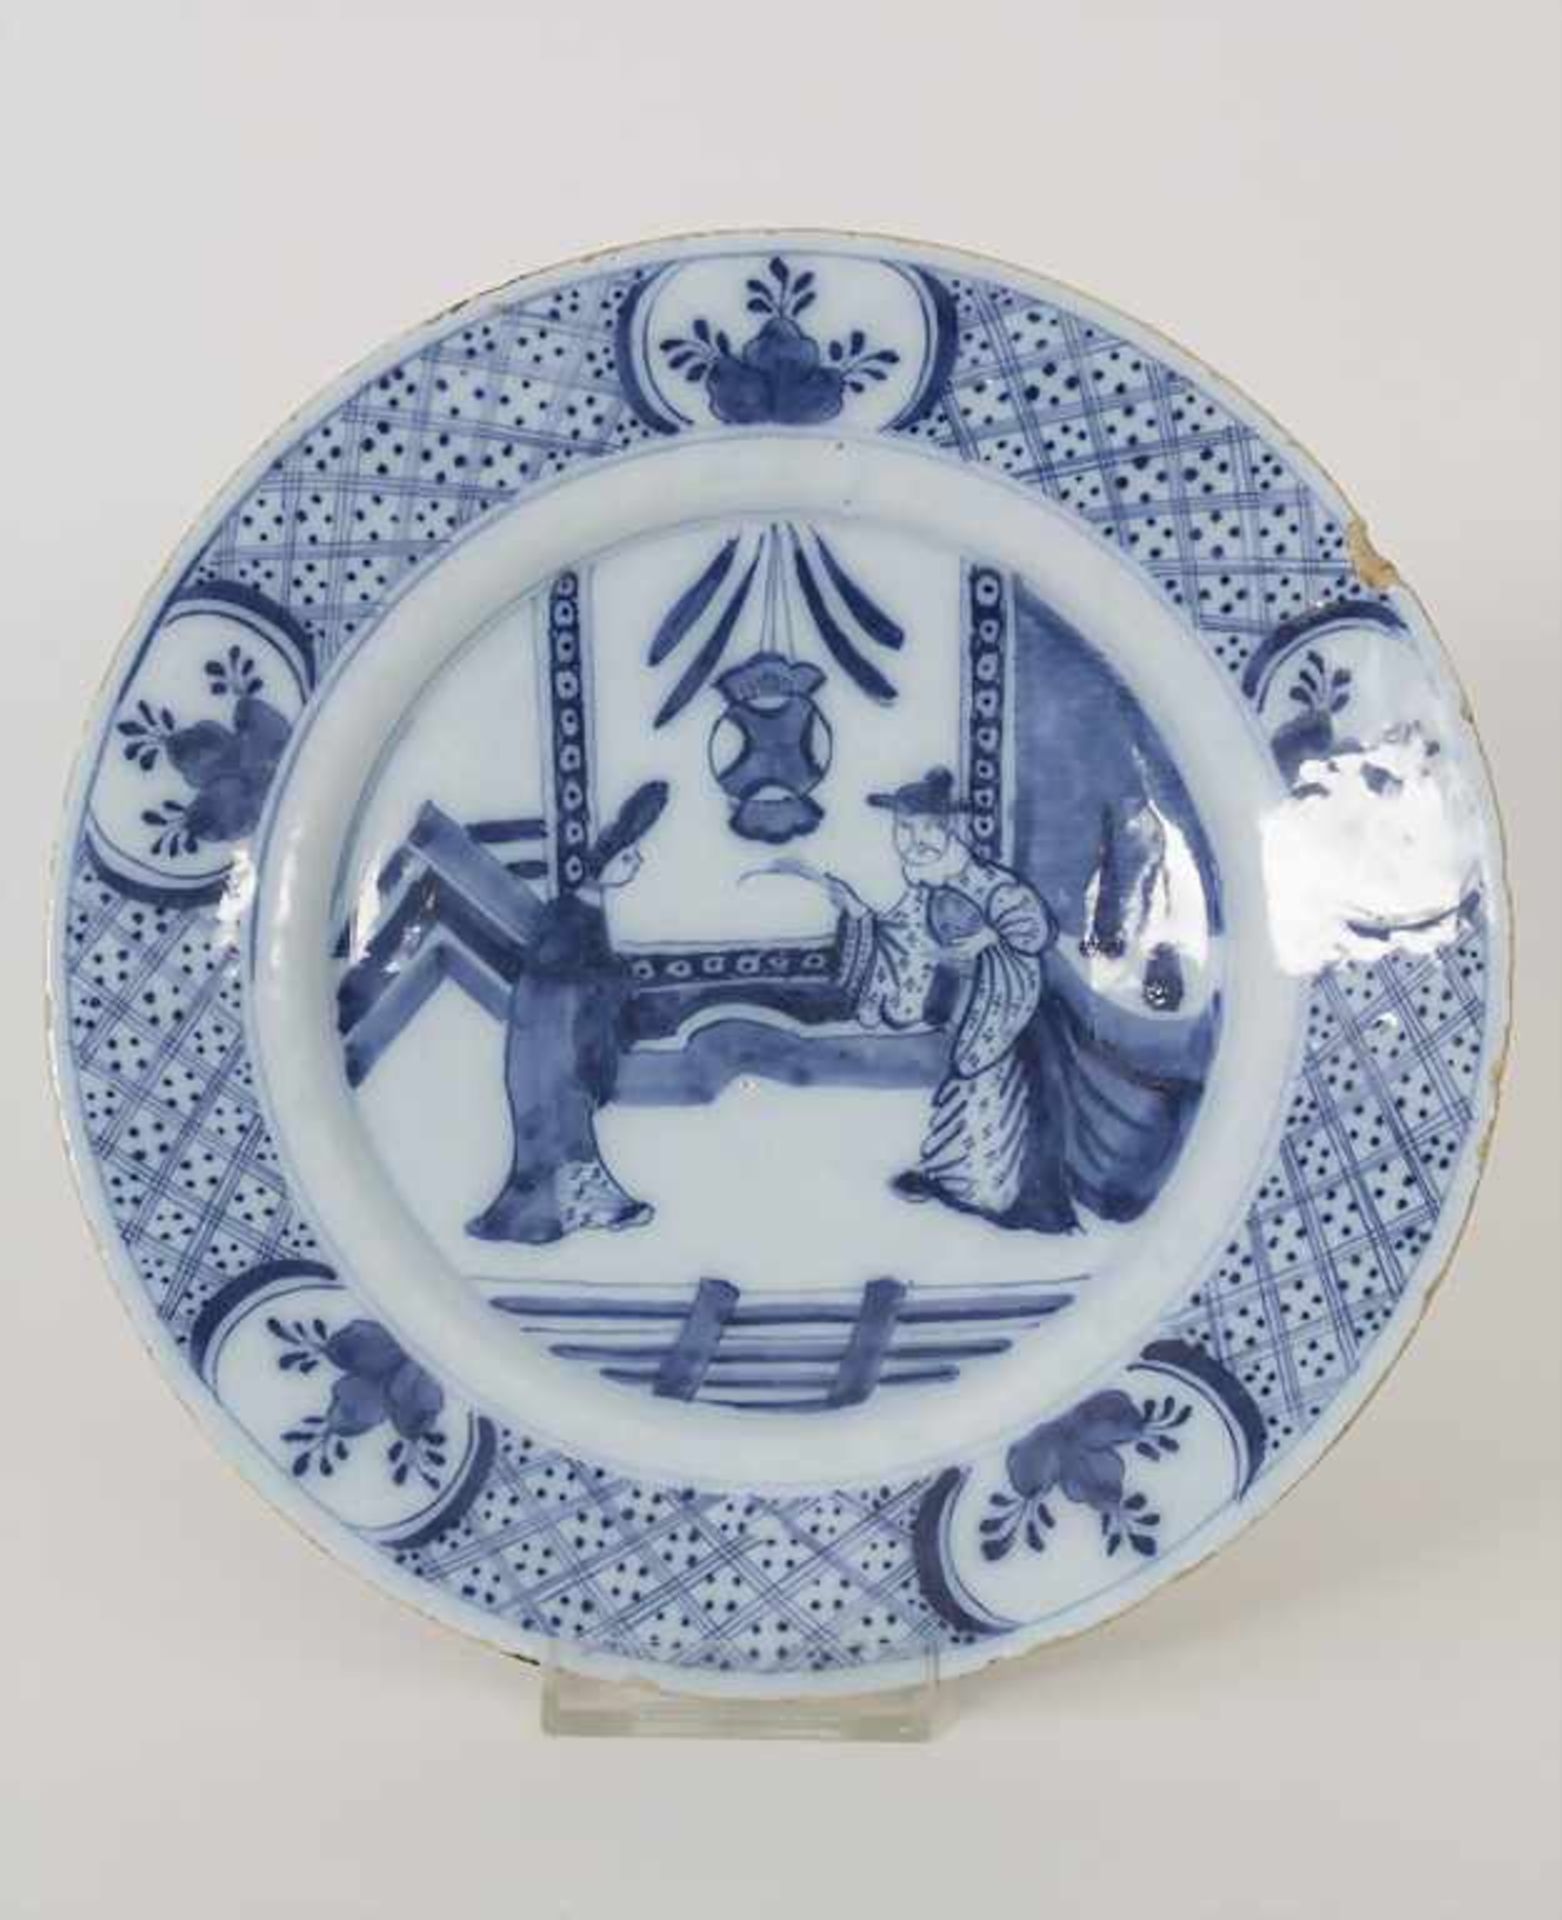 Fayenceteller / A faience plate, Hanau, 18. Jh.Material: Fayence, Chinoiserie unterglasurblau,Marke: